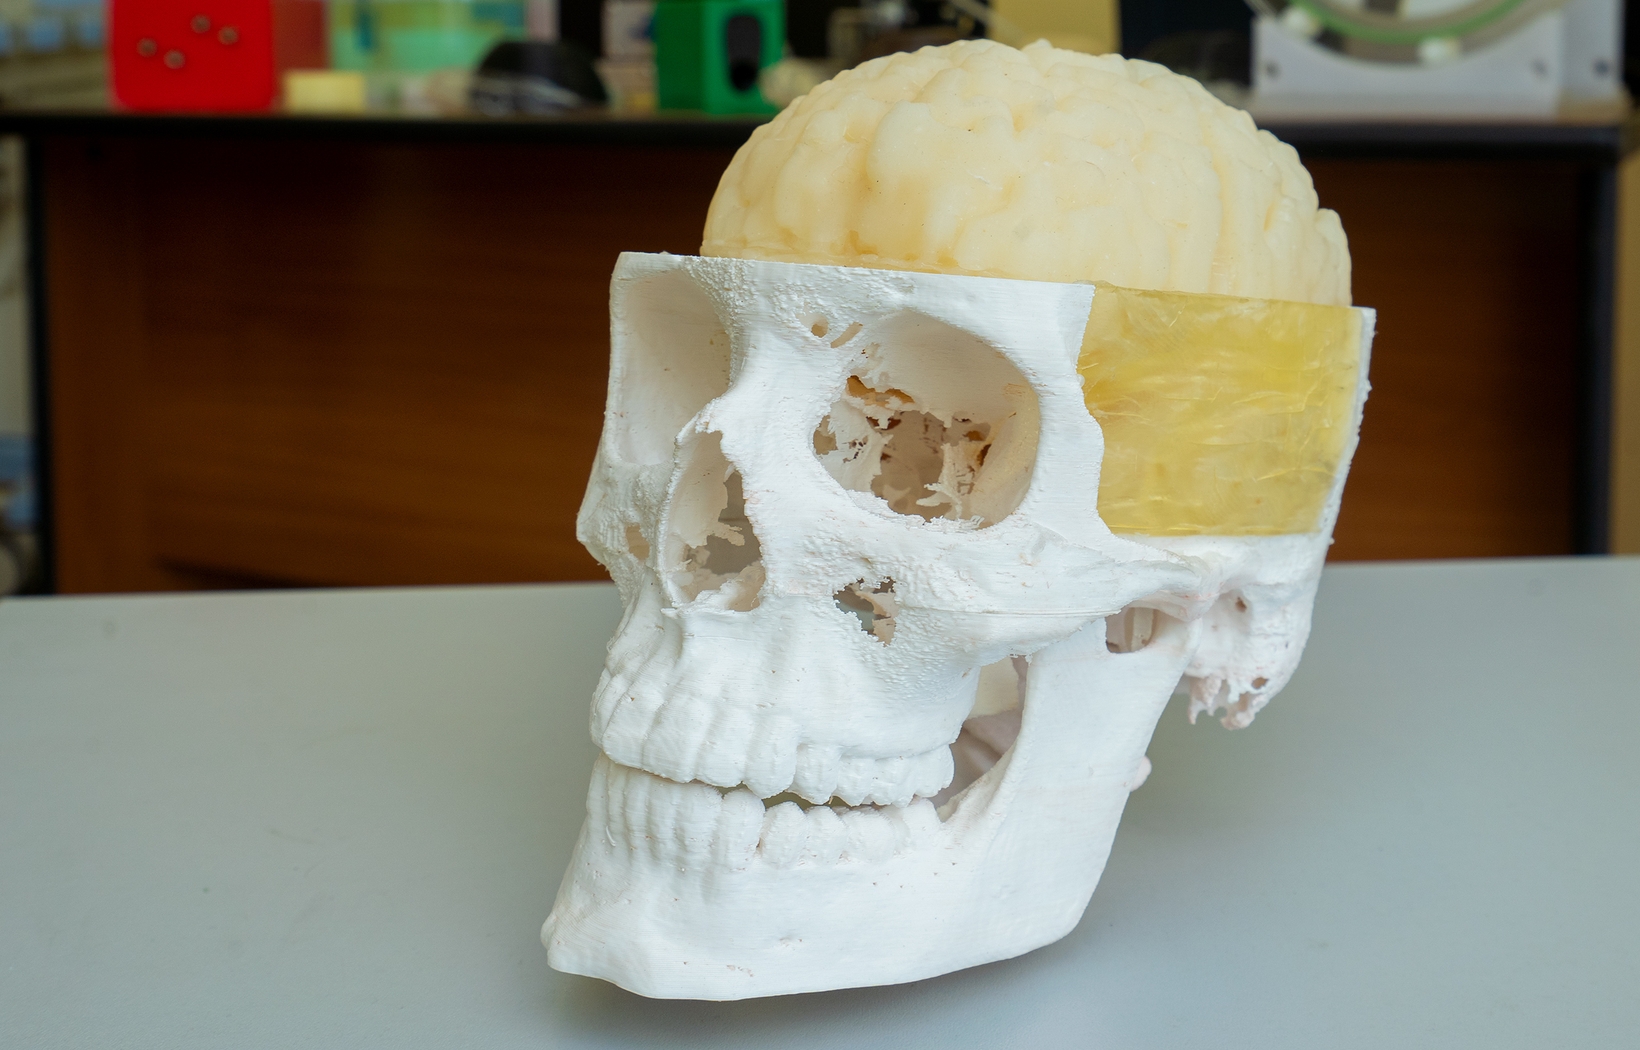 Фантом для исследования сосудов через кости черепа с использованием средств ультразвуковой визуализации, фото 4